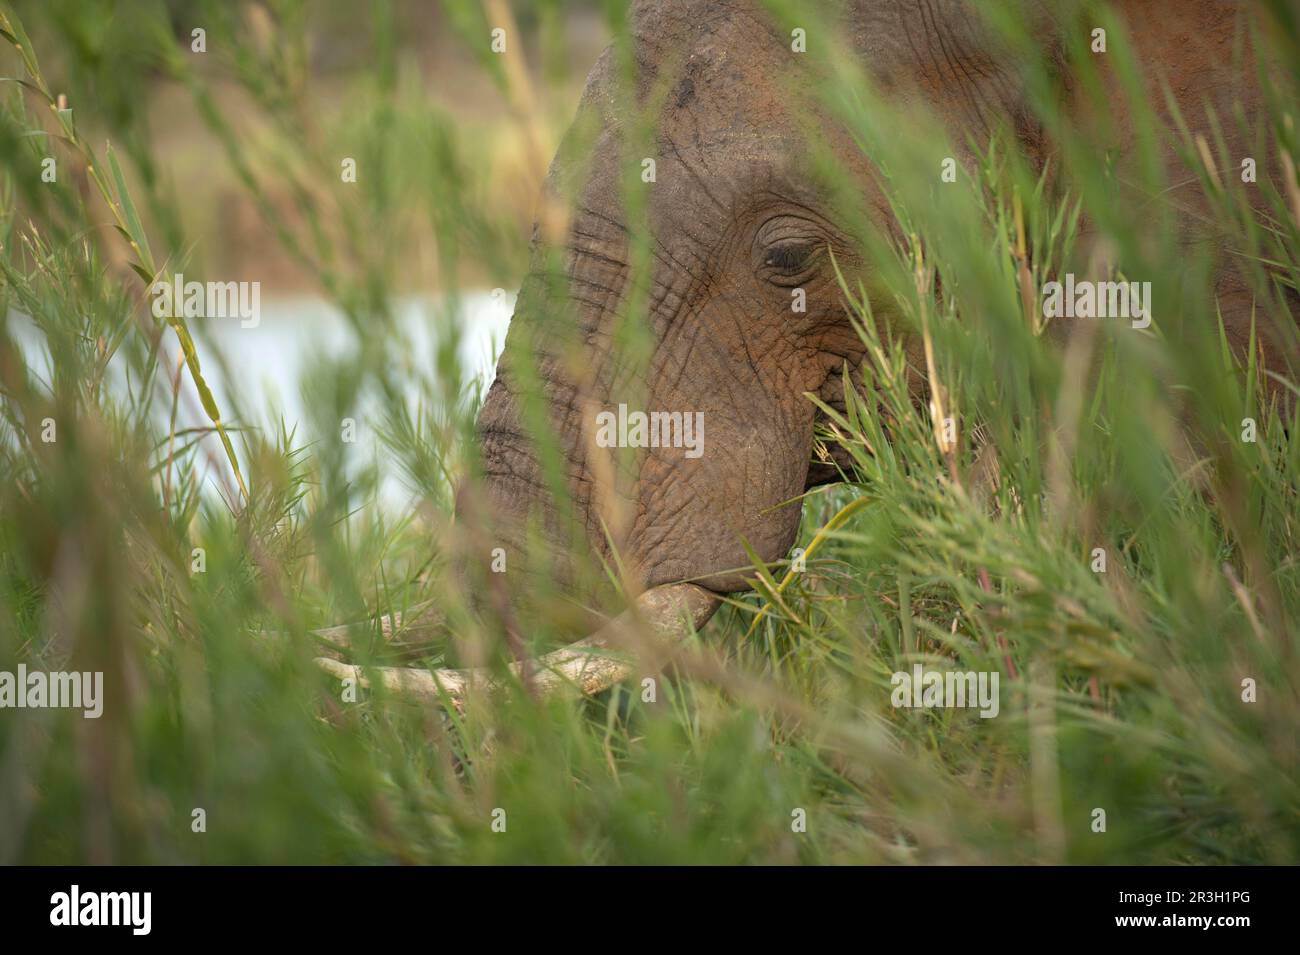 Elefante africano (Loxodonta africana) adulto, primo piano della testa, nutrirsi in erba lunga accanto al fiume, Kruger N. P. Transvaal, Sudafrica Foto Stock